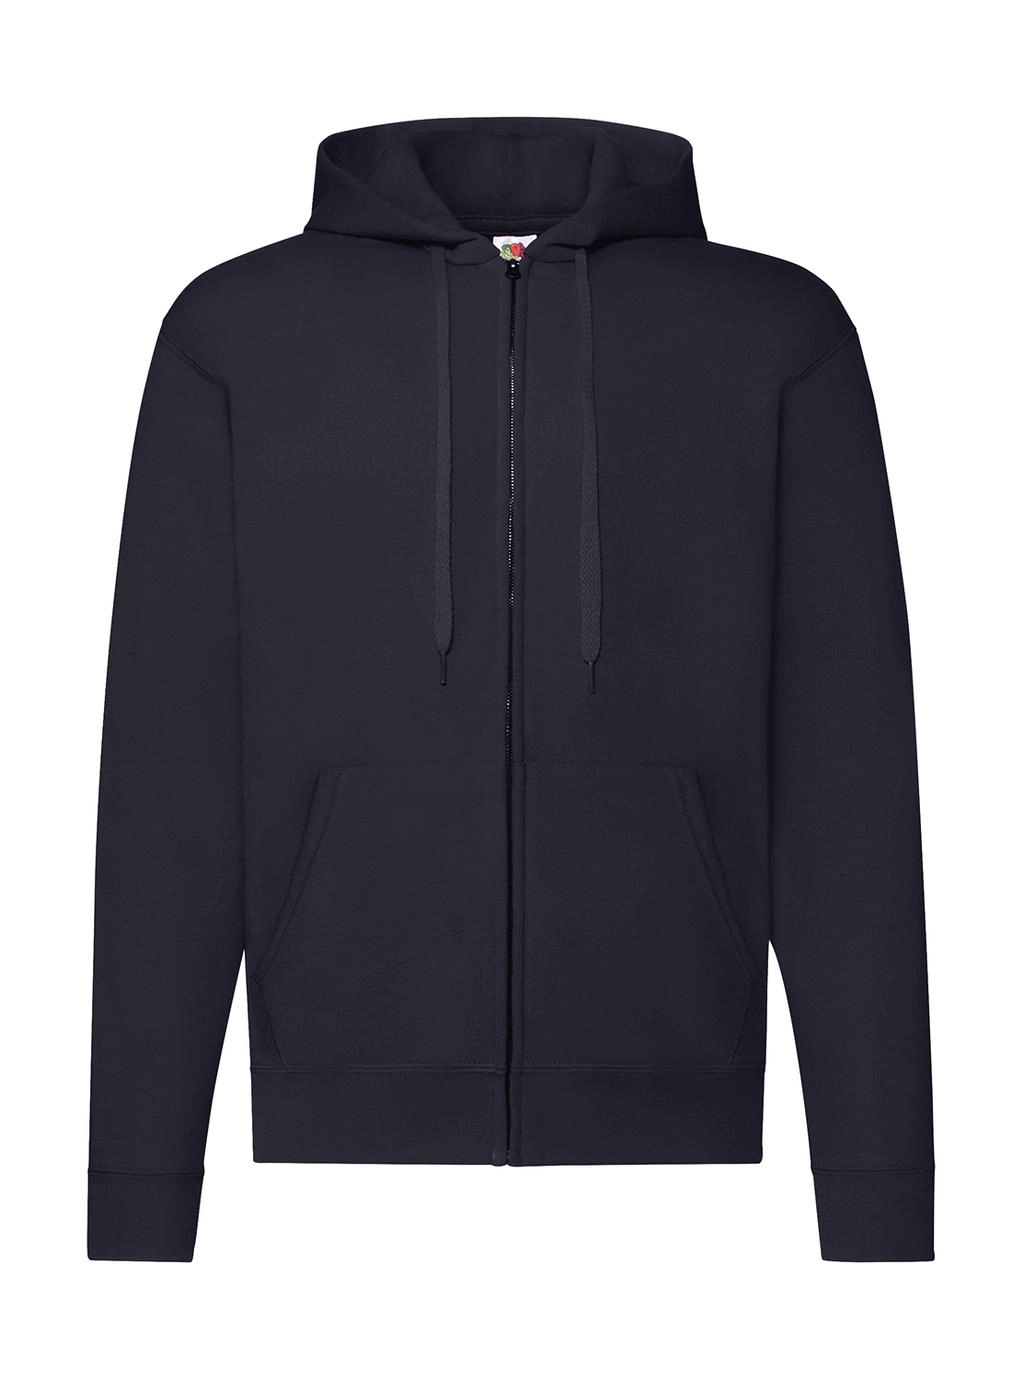 Classic Hooded Sweat Jacket zum Besticken und Bedrucken in der Farbe Deep Navy mit Ihren Logo, Schriftzug oder Motiv.